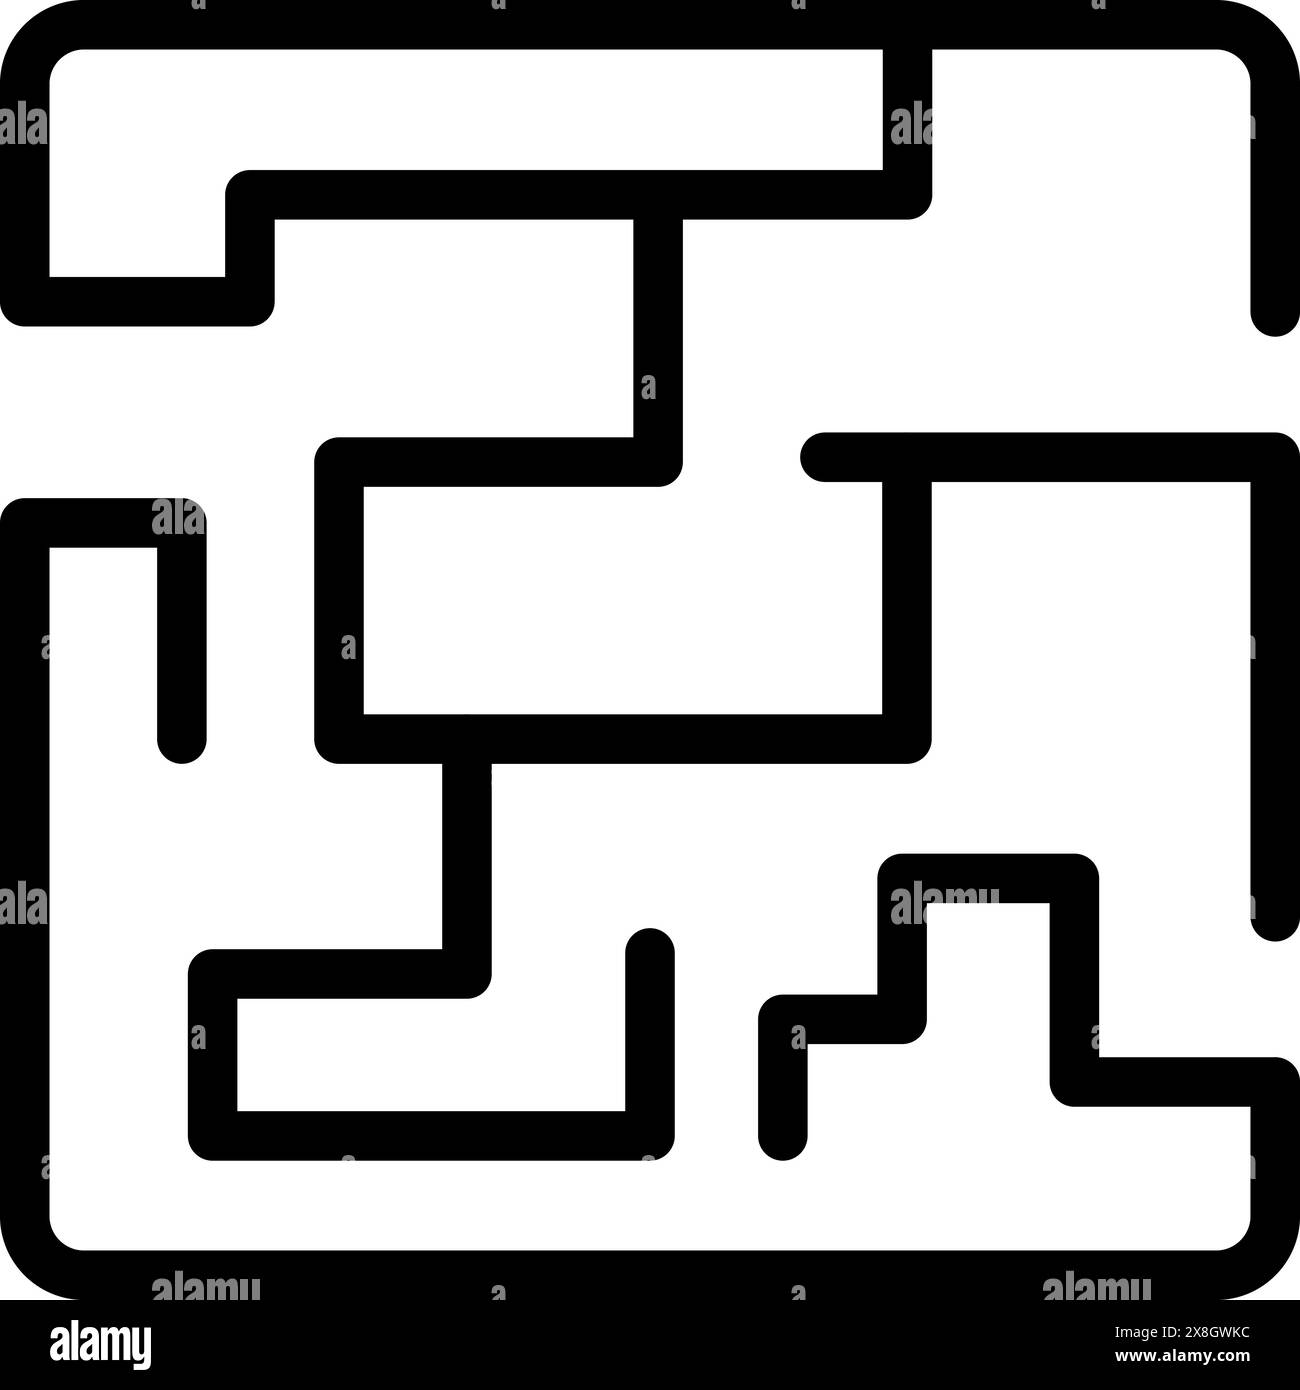 Vereinfachende Labyrinthgrafik in kontrastreichem Schwarz-weiß-Schema Stock Vektor